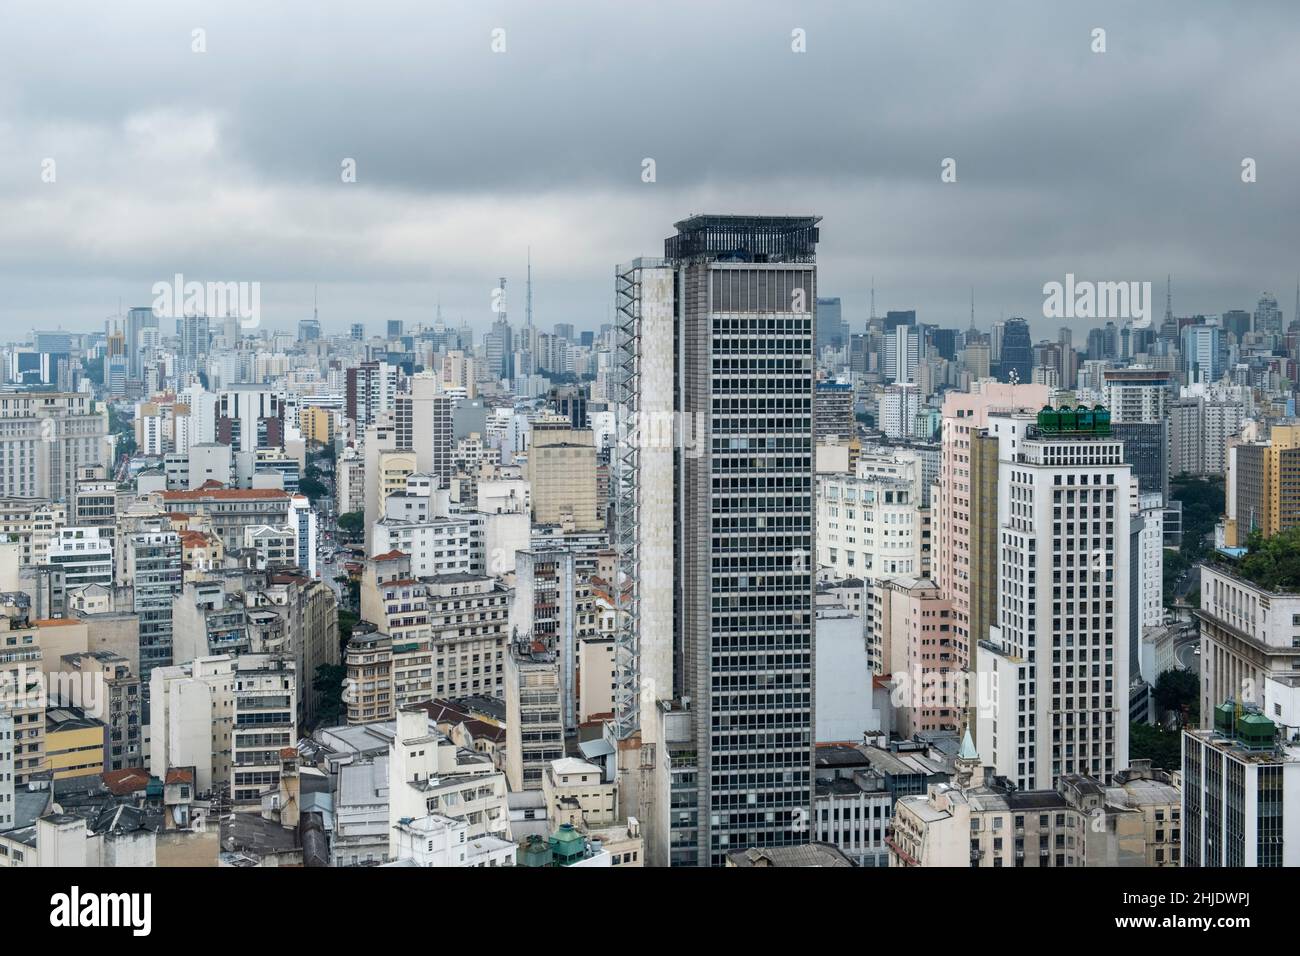 Brasile, São Paulo. Skyline urbano di alti edifici commerciali e residenziali nel quartiere del centro. La città più grande delle Americhe. Foto Stock